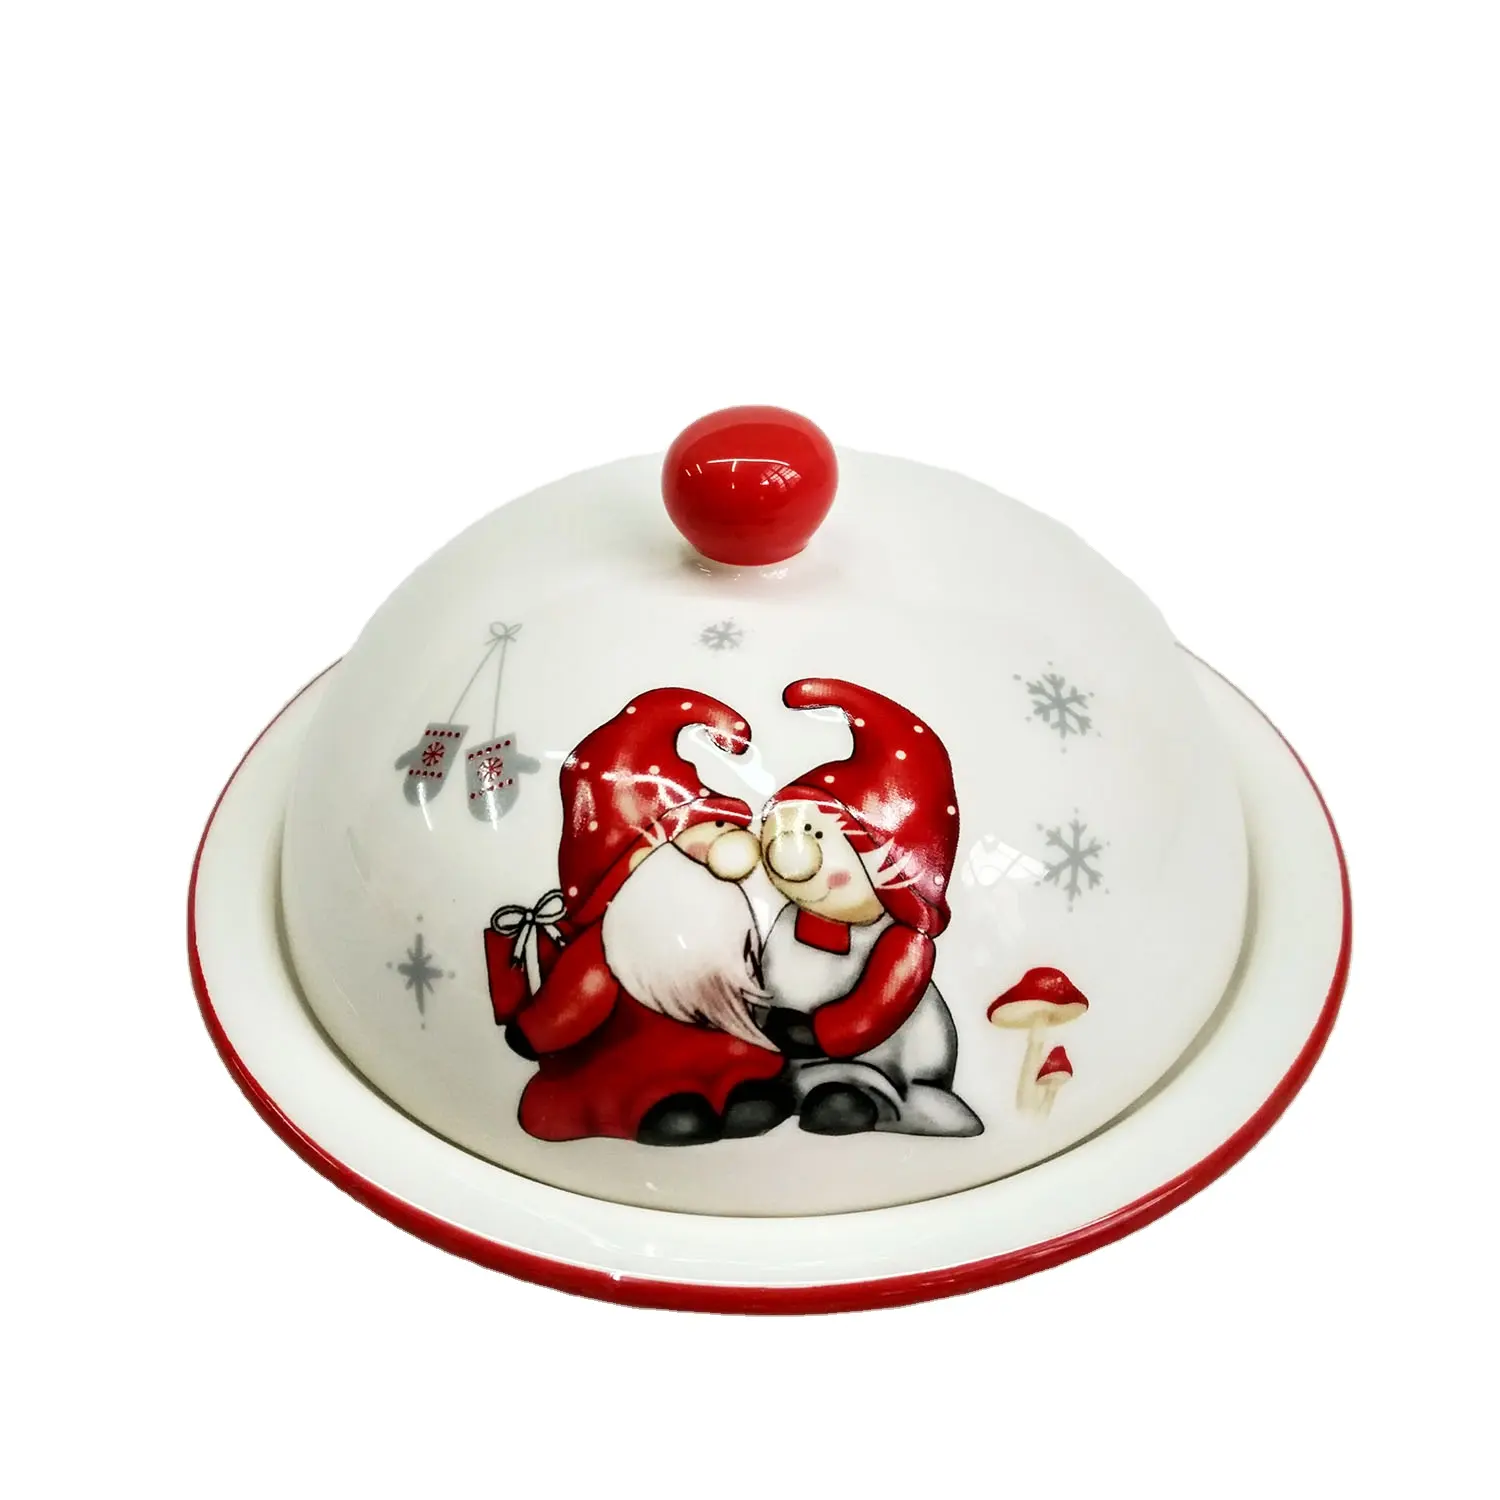 Plato redondo de cerámica con tapa para decoración navideña, diseño de gato, blanco